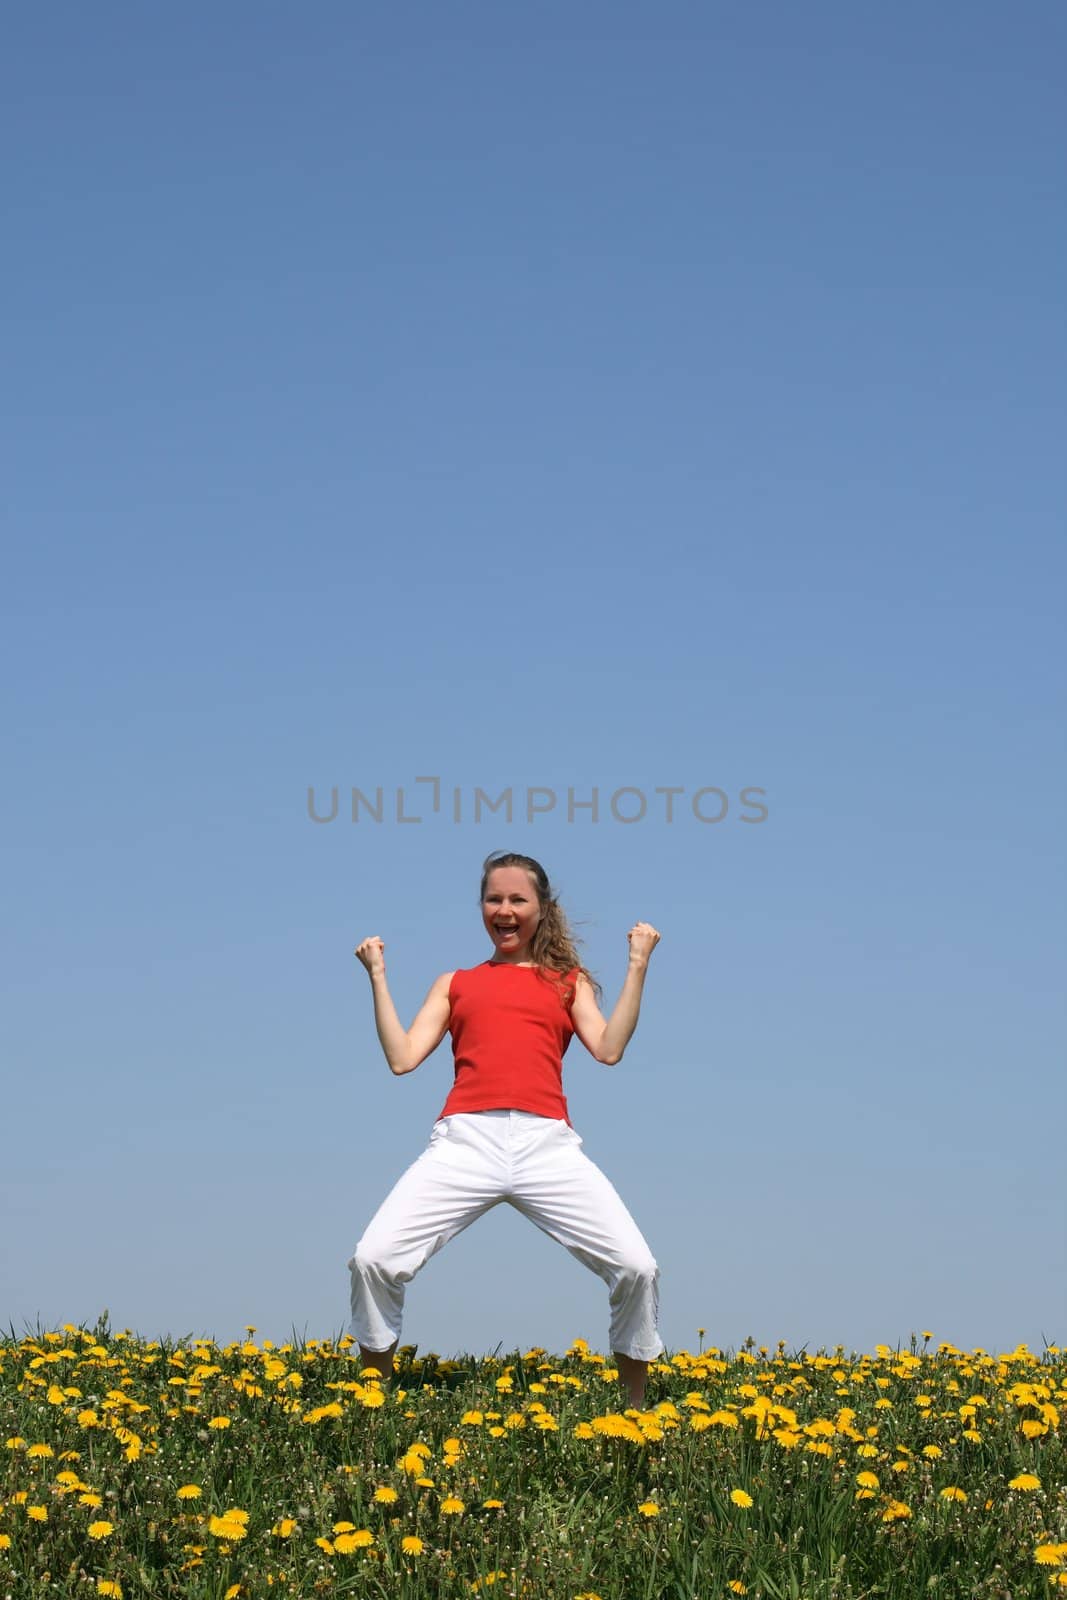 Sporty girl in a flowering field, yelling "yeah!"